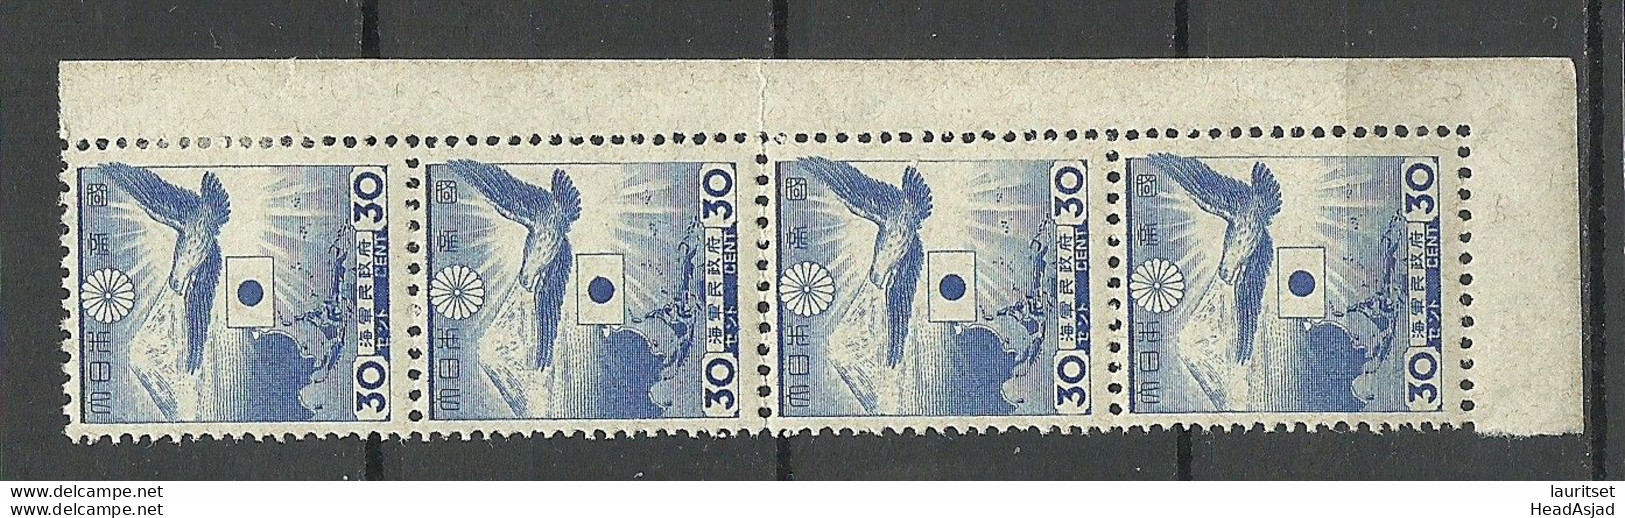 JAPAN Nippon 1943 Ausgabe Für Japanische Marine Michel 9 As 4-stripe MNH/MH (1 Stamp Is MH/*) - Militärpostmarken